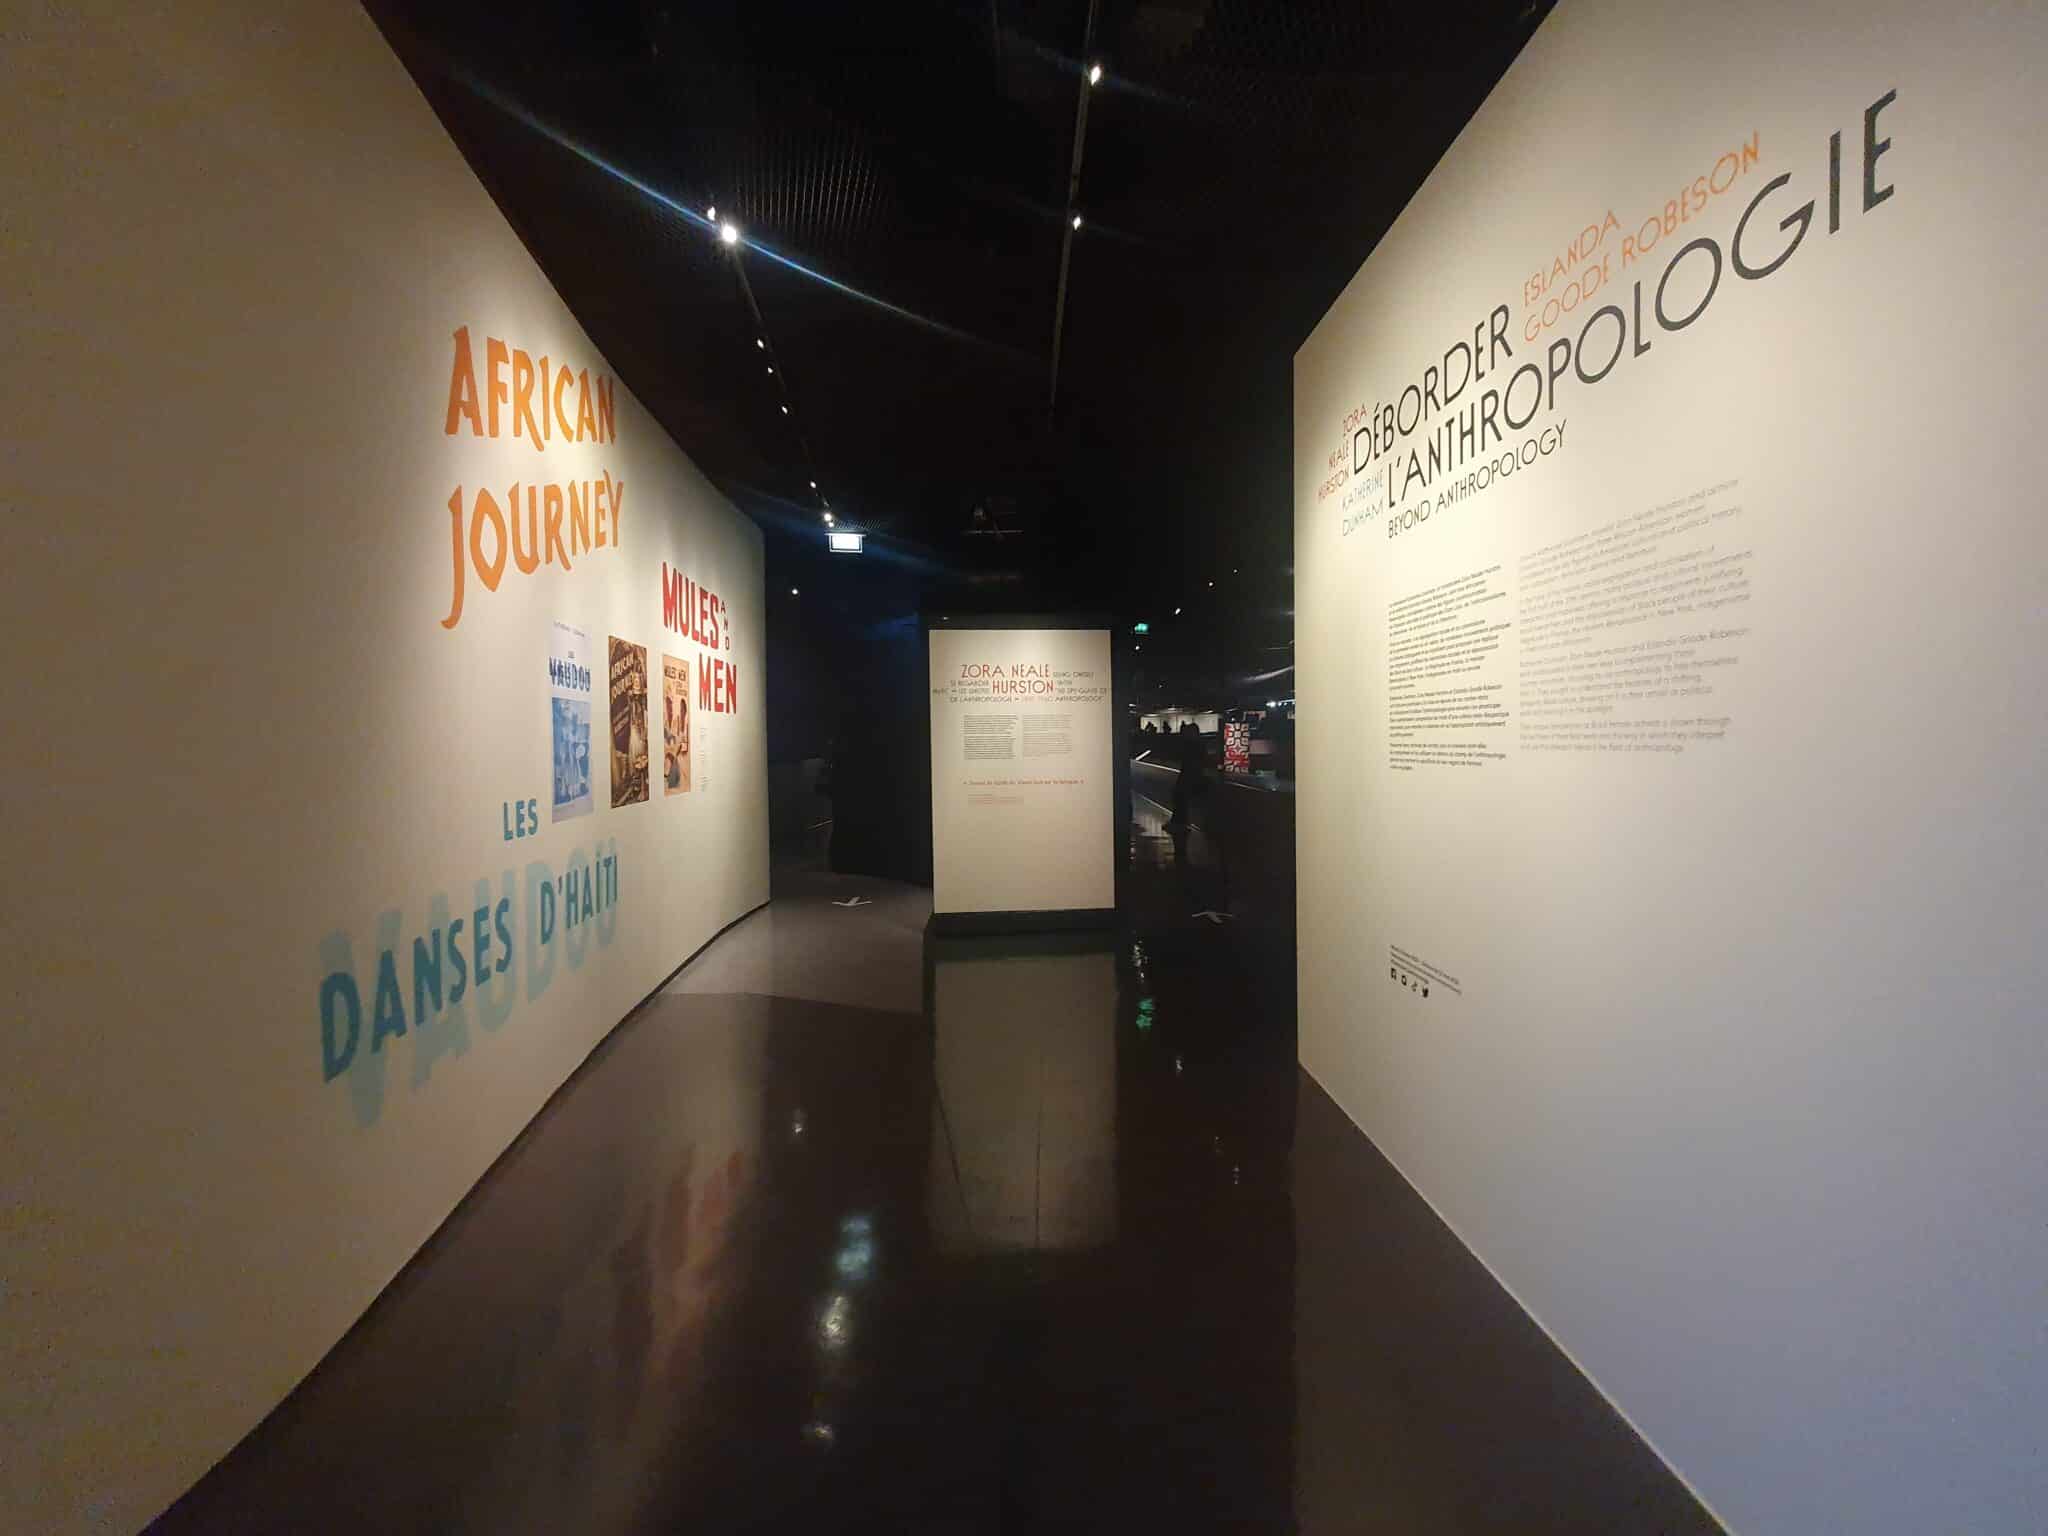 Entrée de l'exposition "Déborder l'anthropologie", Musée du Quai Branly, Paris